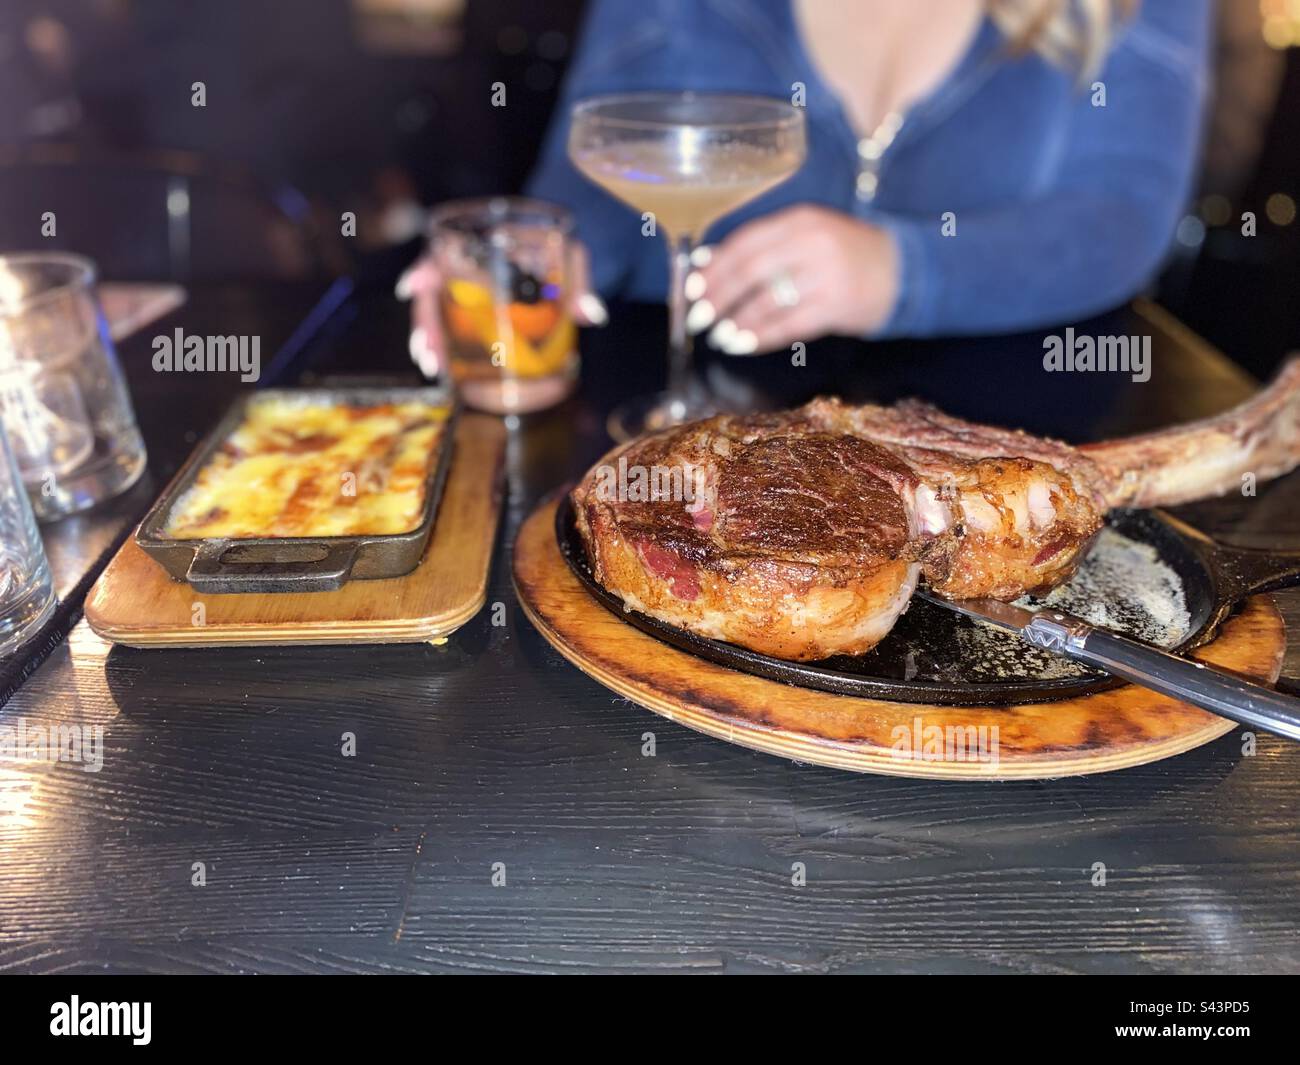 Tomahawk steak Stock Photo